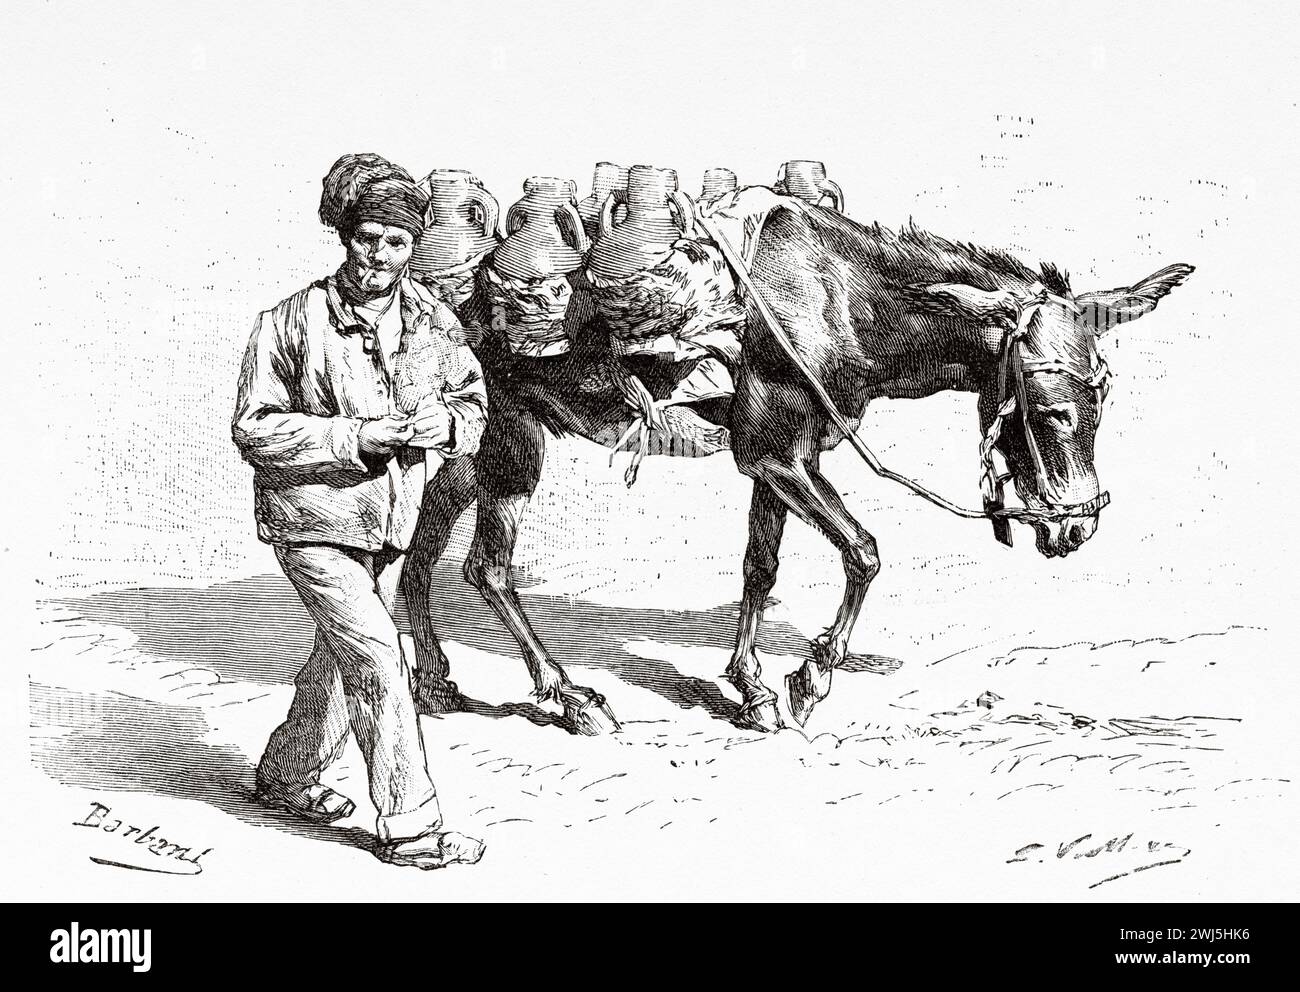 Ein Wasserträger trägt Wasser auf einen Esel, Ibiza. Baleareninsel, Spanien. Ausflug zu den Balearen Menorca und Cabrera 1888 mit Gaston Charles Vuillier (1845 - 1915) Le Tour du Monde 1890 Stockfoto